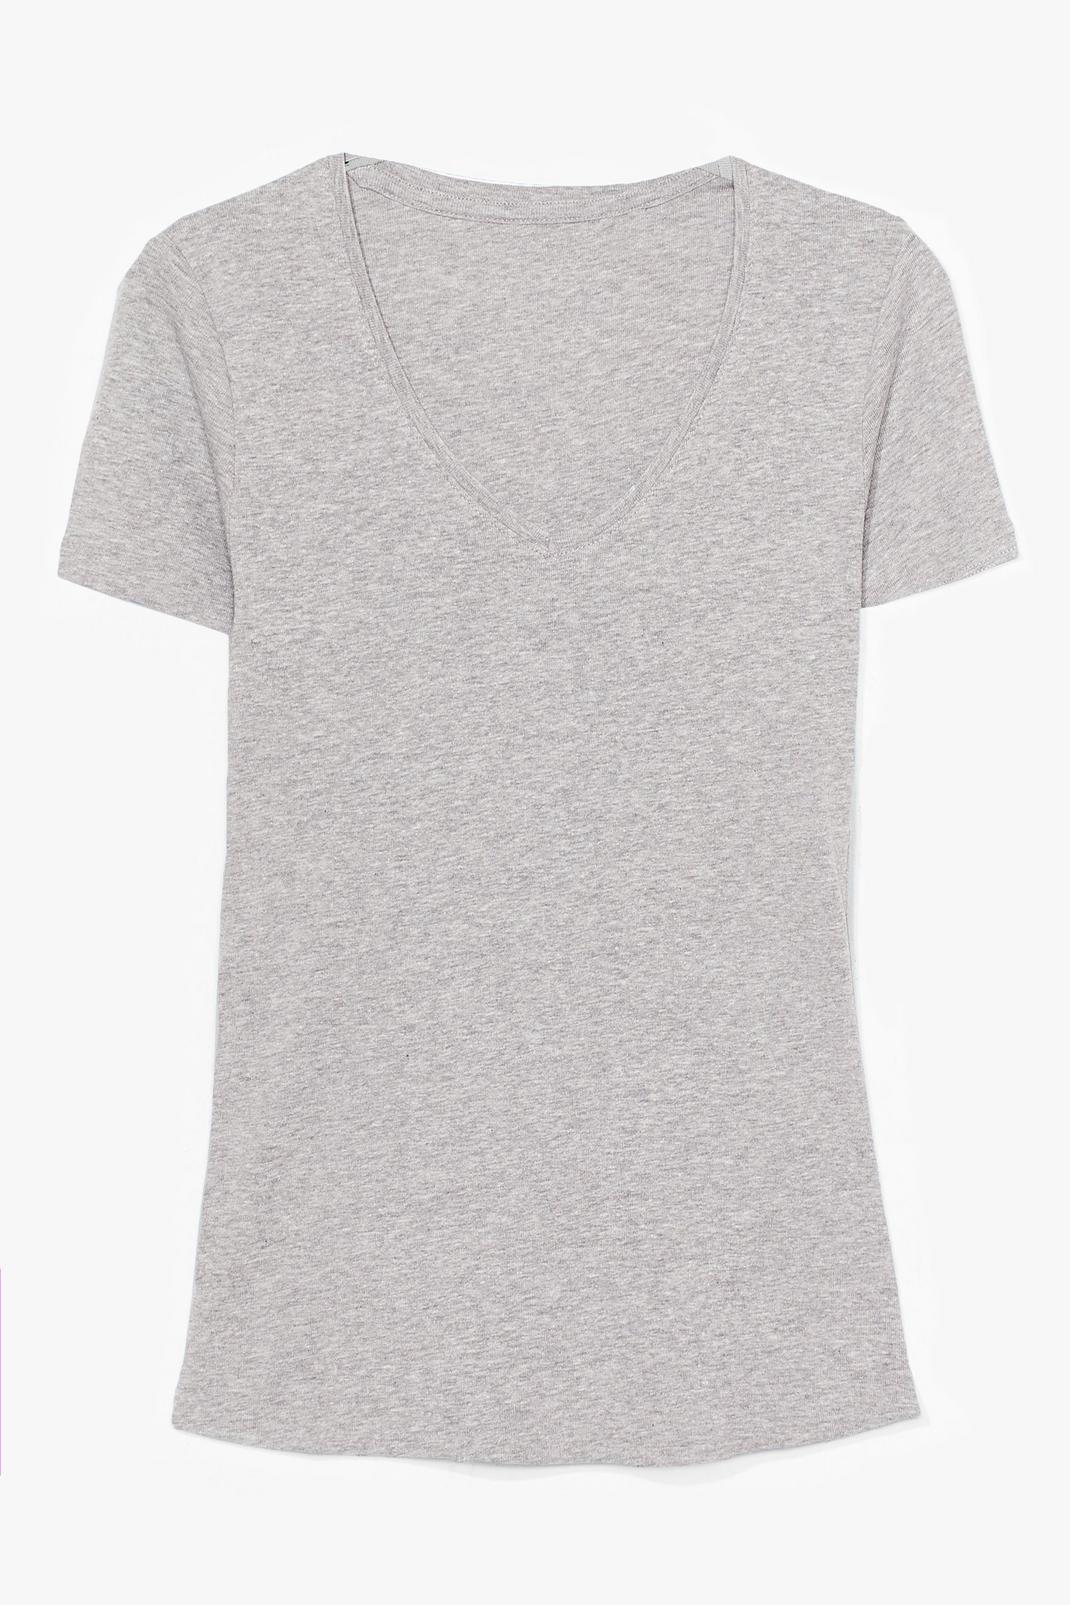 Grey V Neck Short Sleeve T-Shirt image number 1